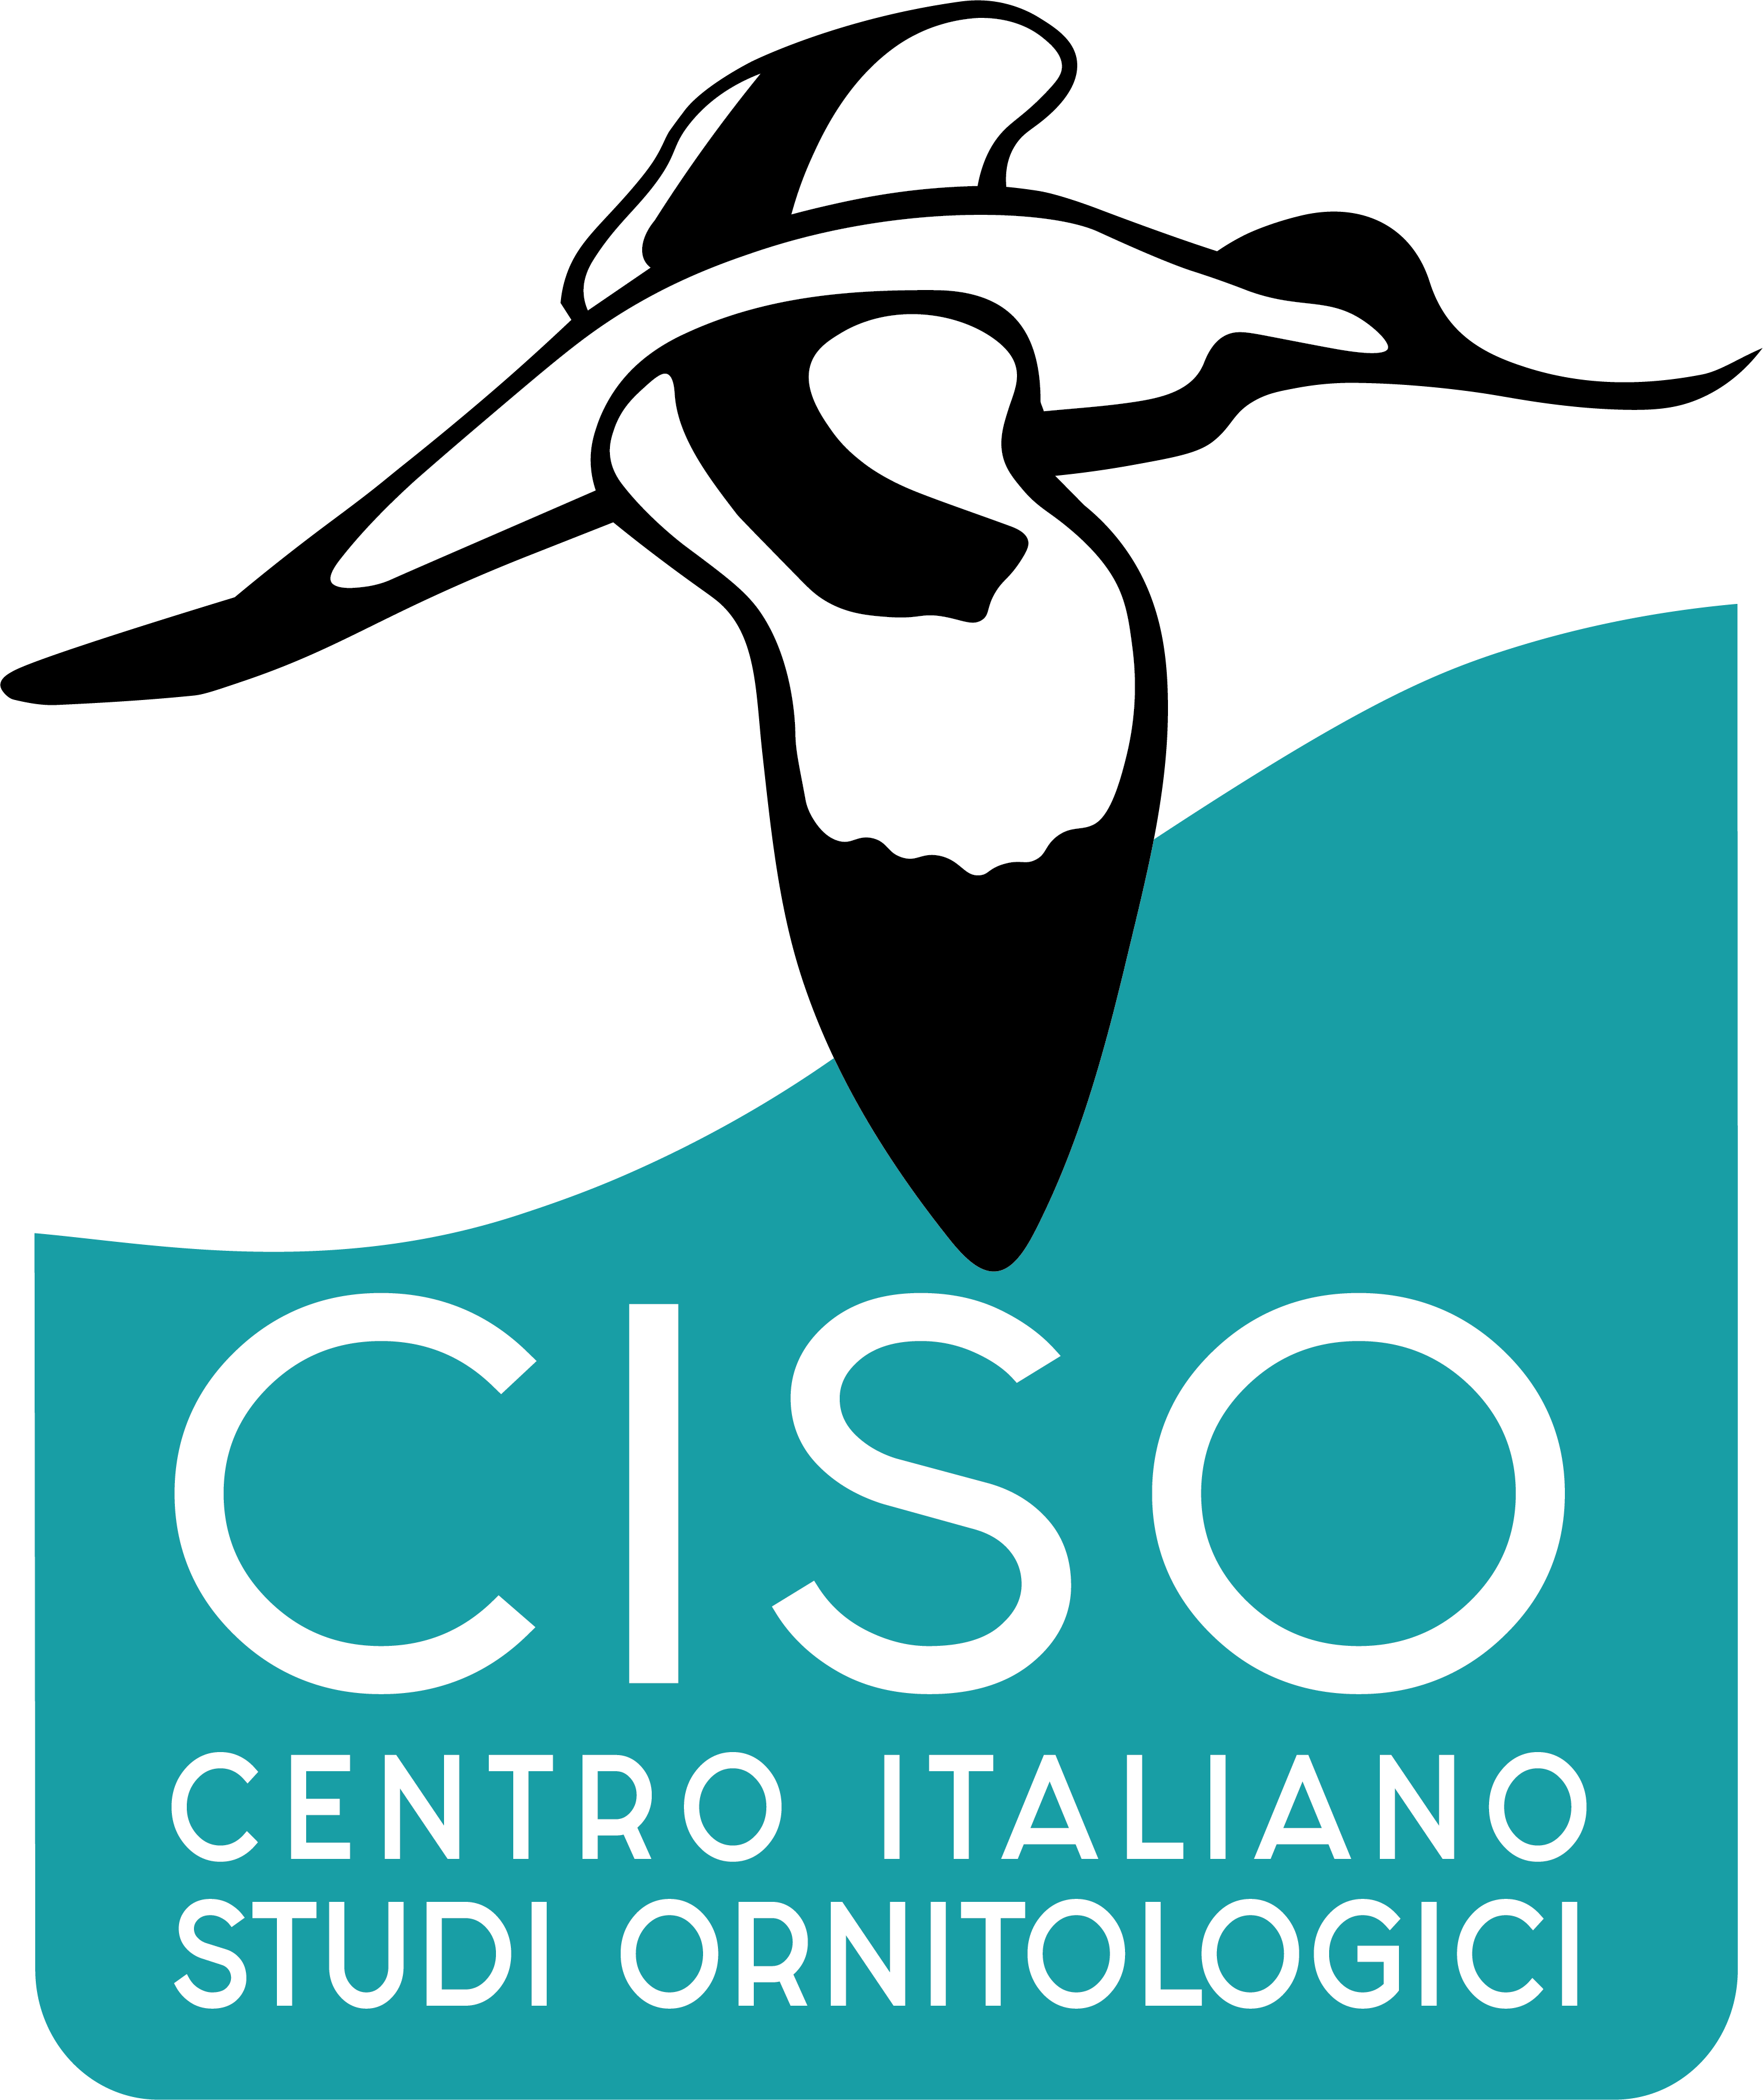 CISO – Centro Italiano Studi Ornitologici